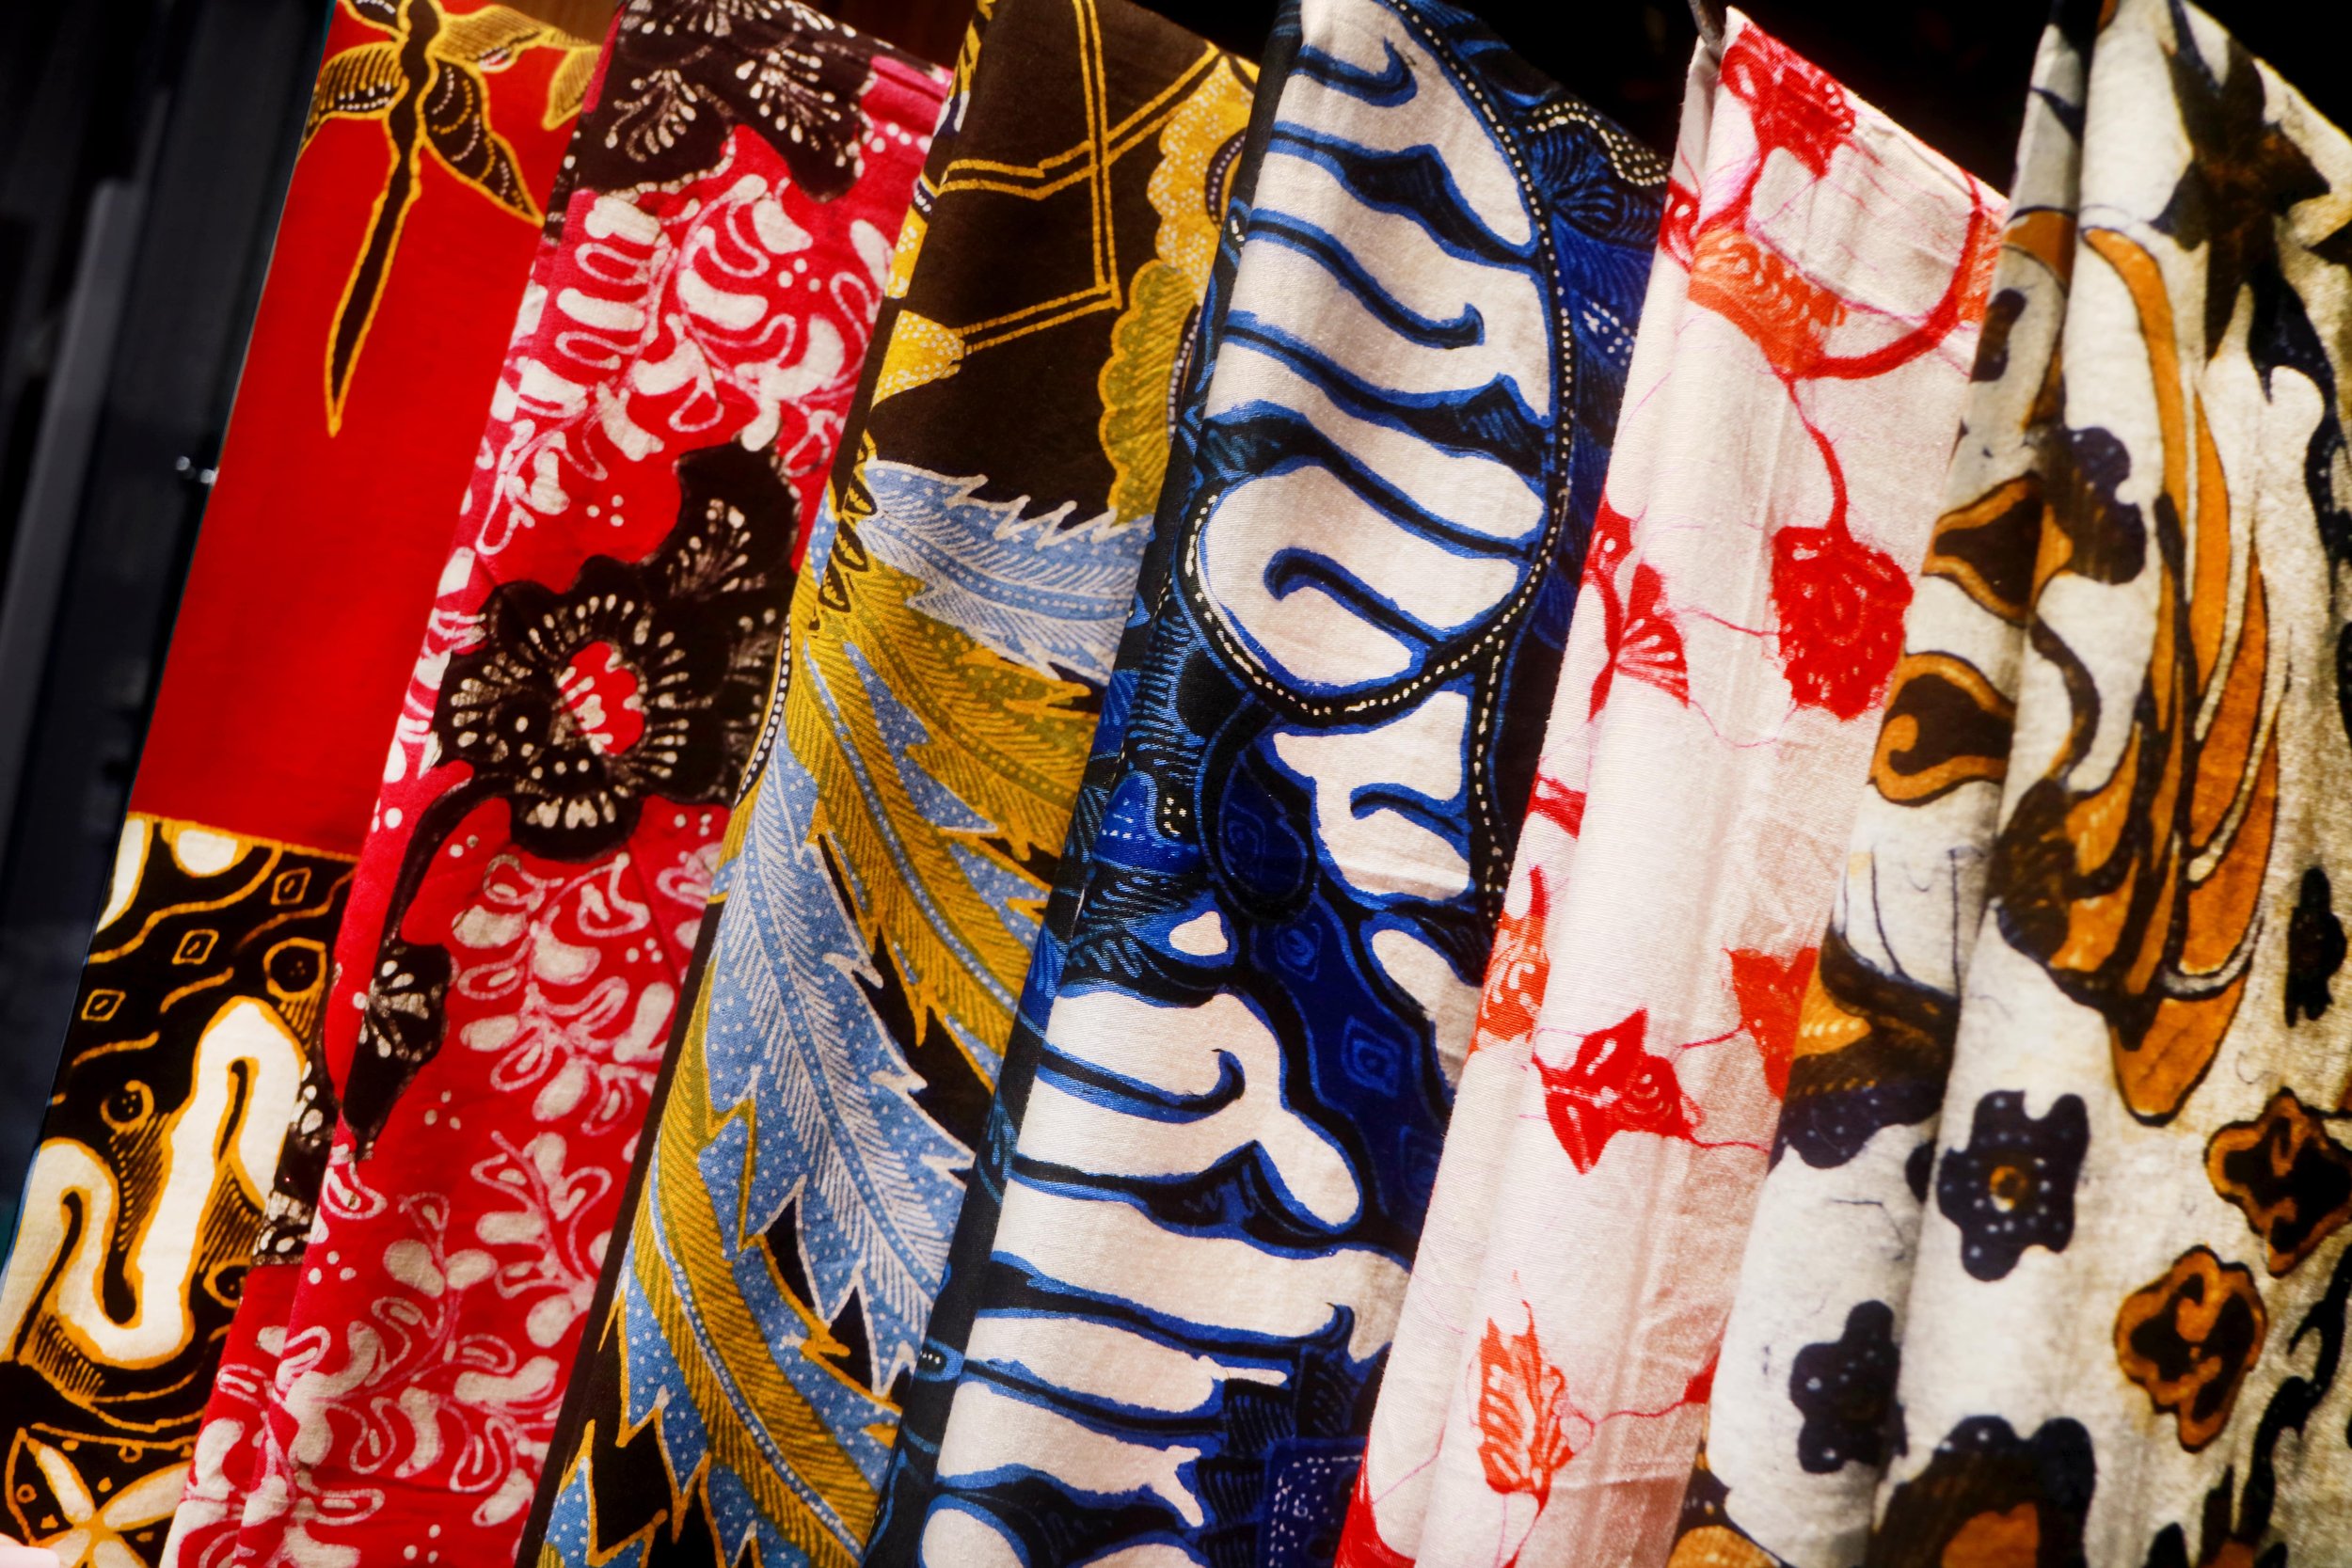 Menampilkan Kain Batik tradisional Indonesia dalam berbagai warna dan cetakan